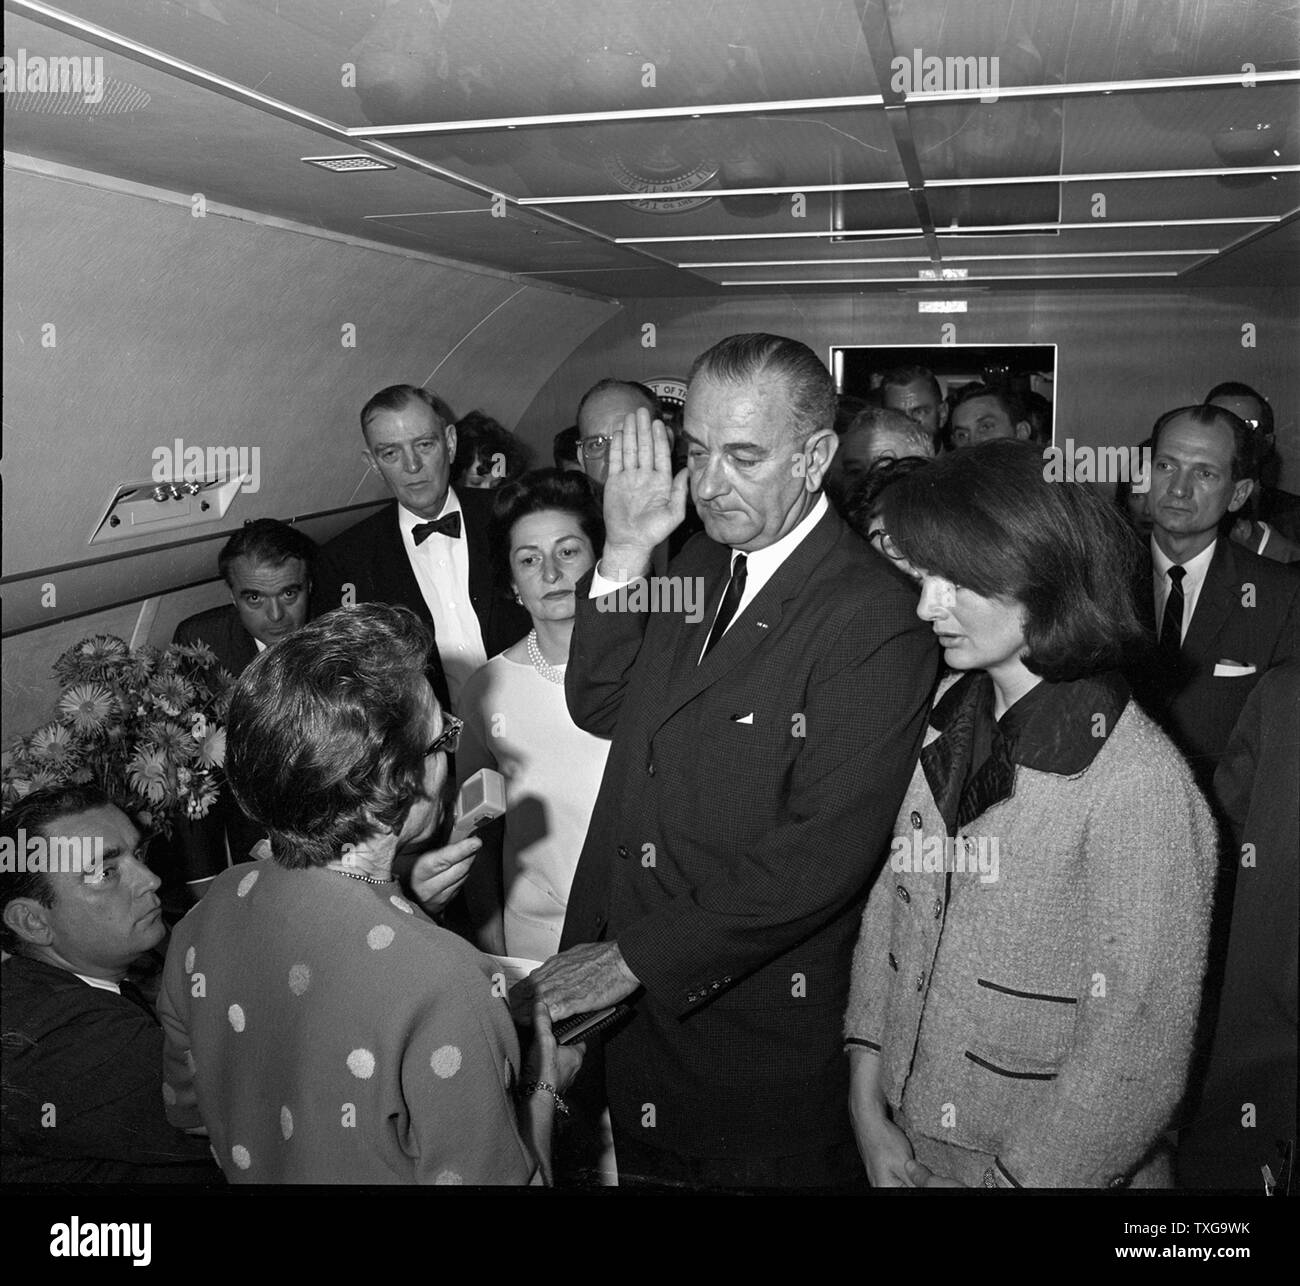 Lyndon Baines Johnson, 36e président des États-Unis de 1963 à 1969 assermenté à titre de président des États-Unis sur un avion transportant le corps de son prédécesseur assassiné John Kennedy. Novembre 1963. Banque D'Images